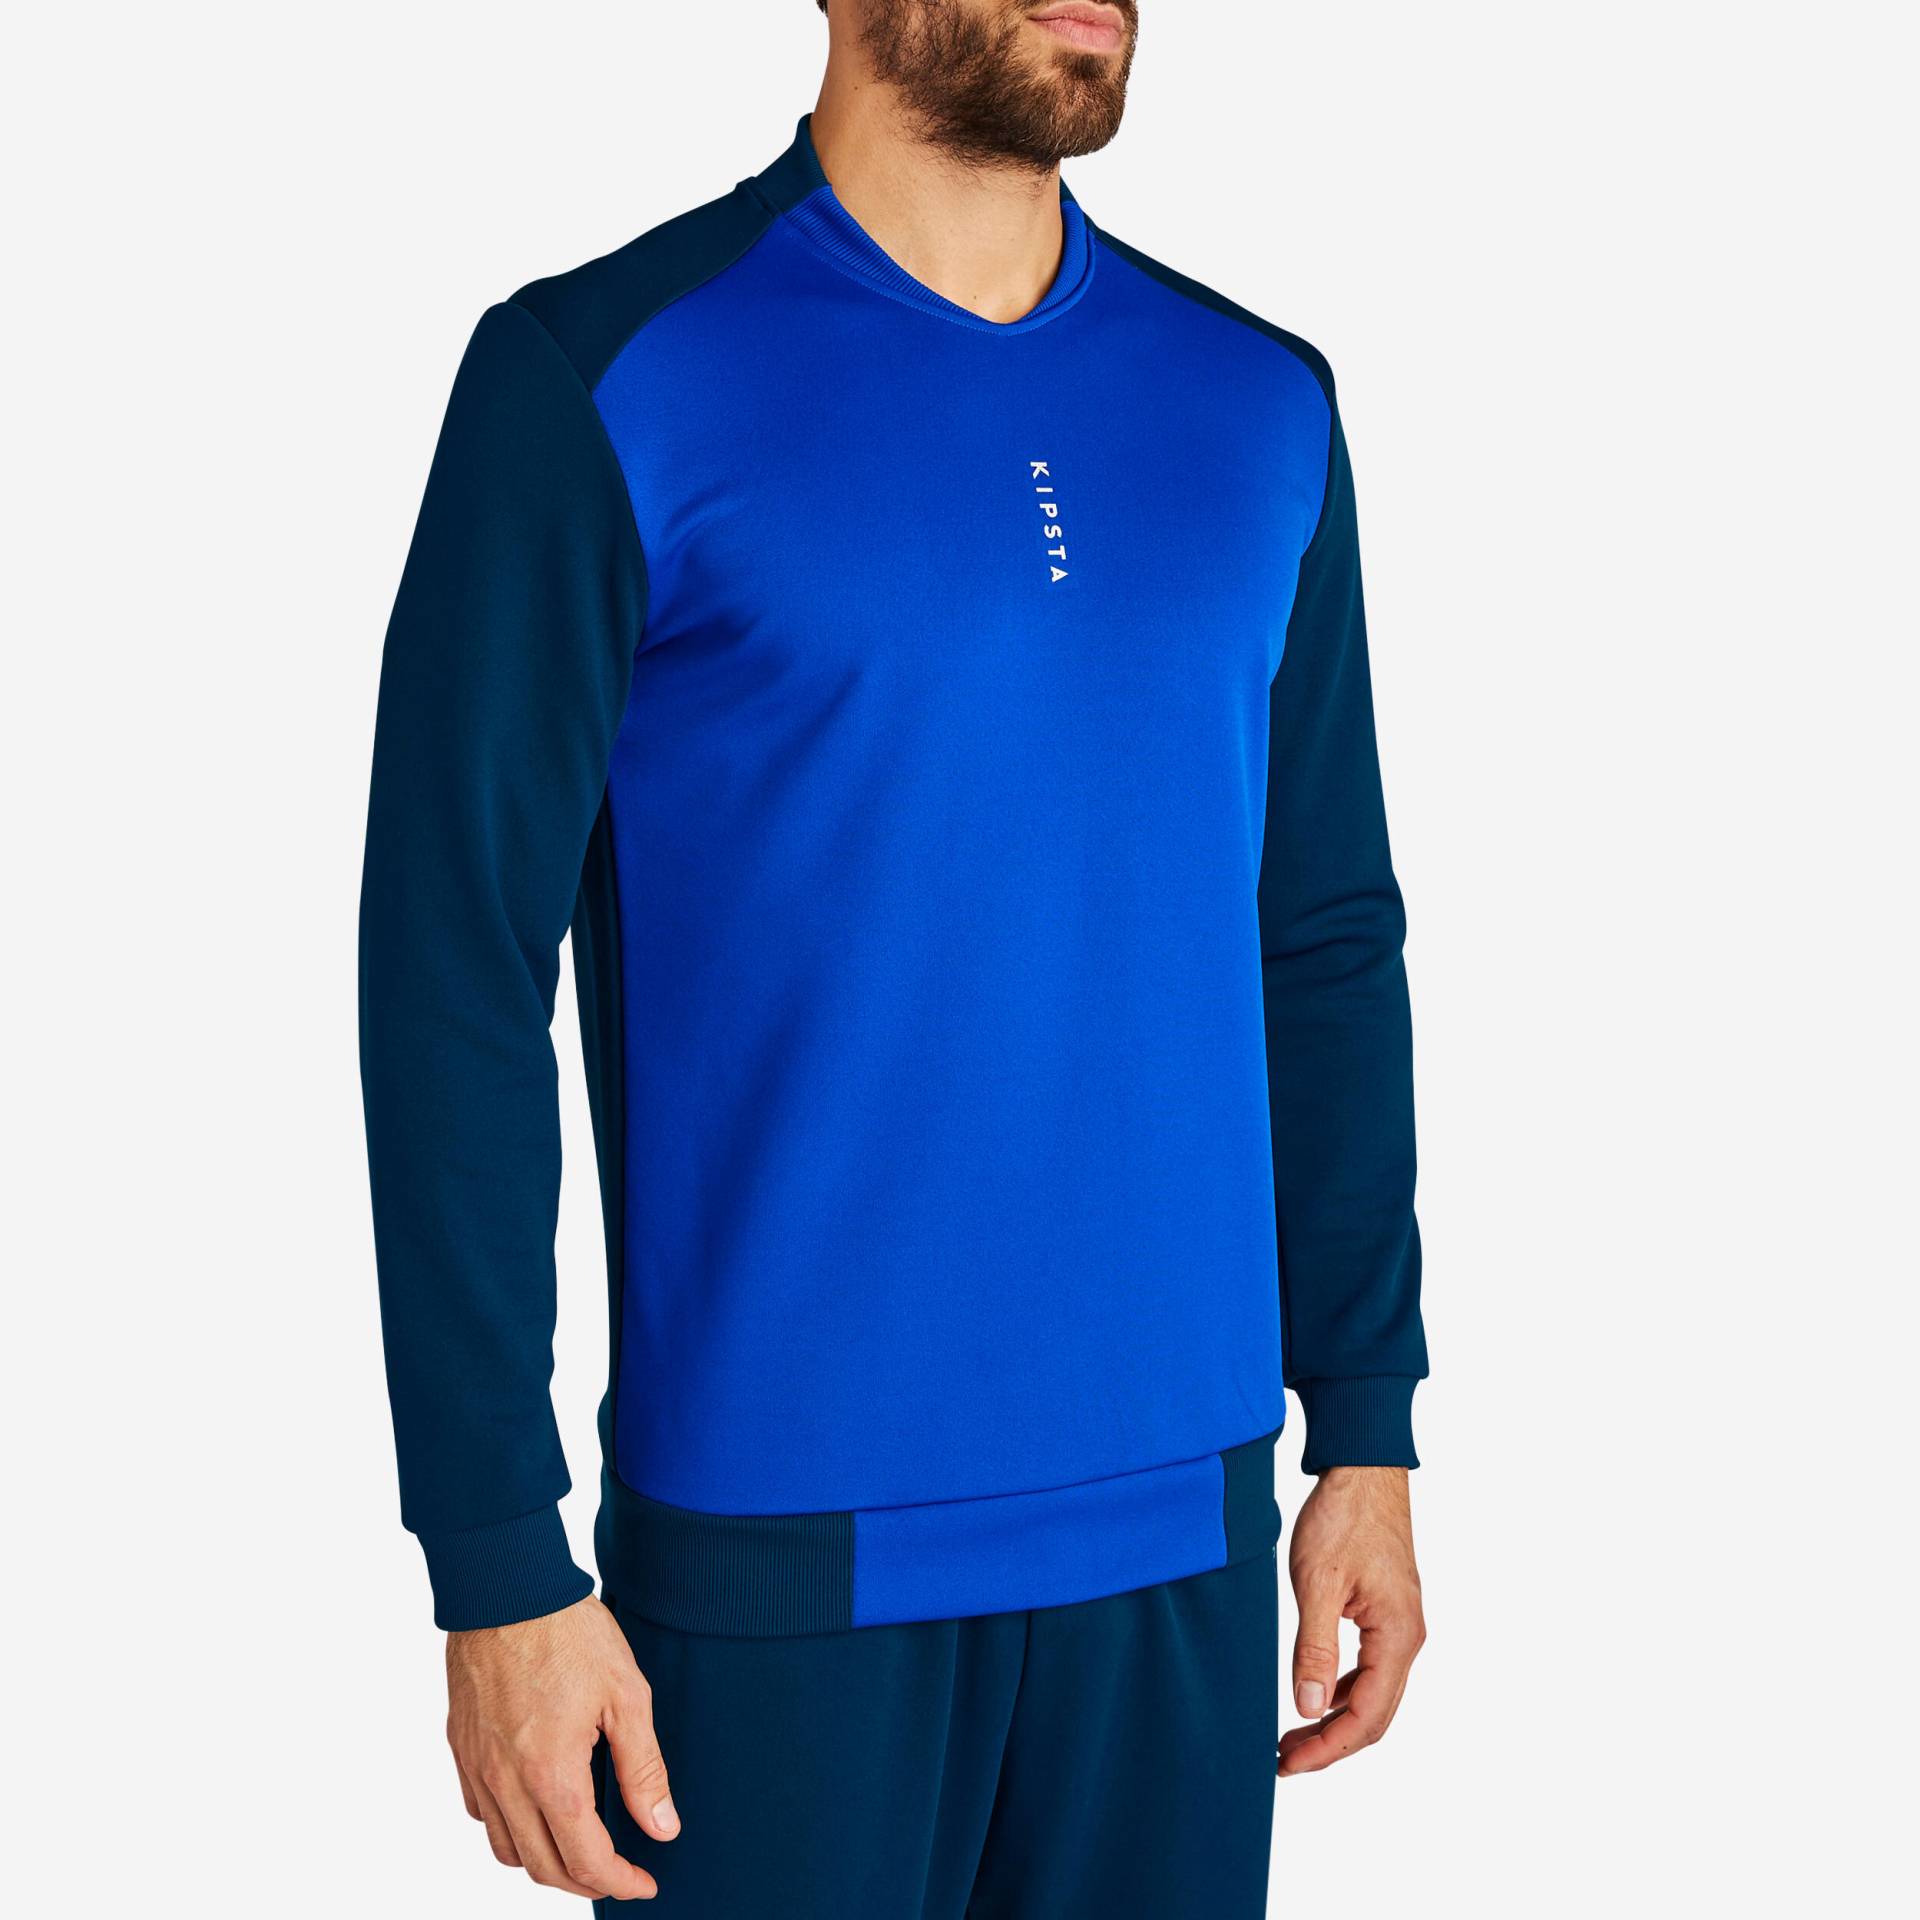 Damen/Herren Fussball Sweatshirt - T100 dunkelblau von KIPSTA